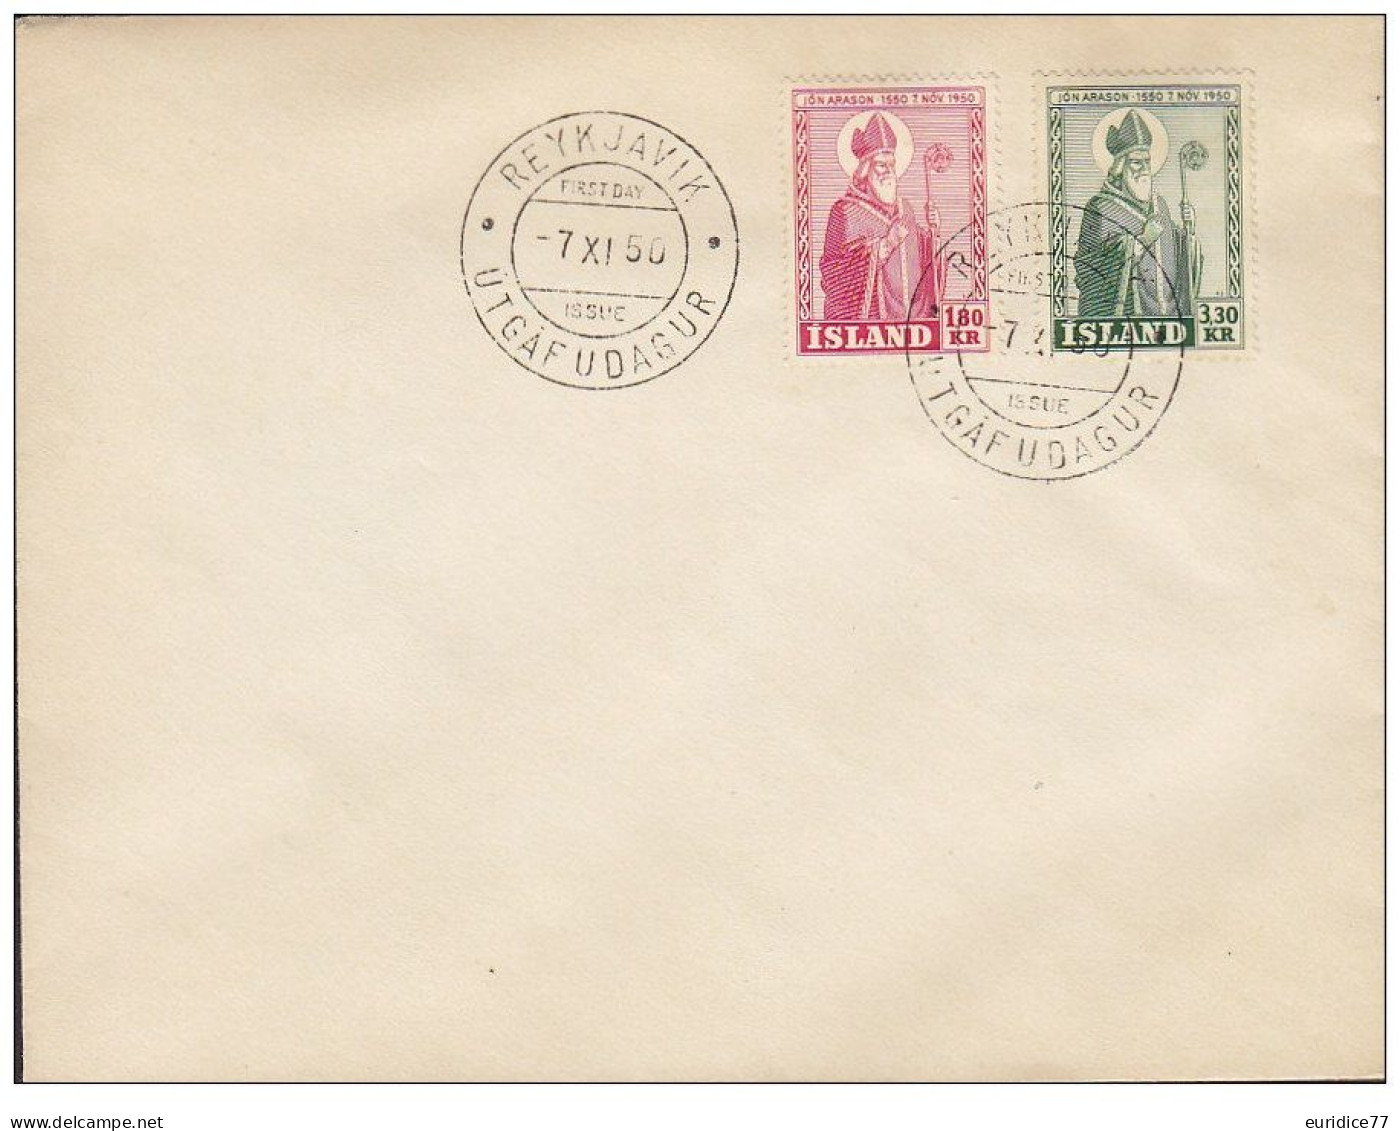 Iceland Islande 1950 -  Envelope Premier Jour - FDC